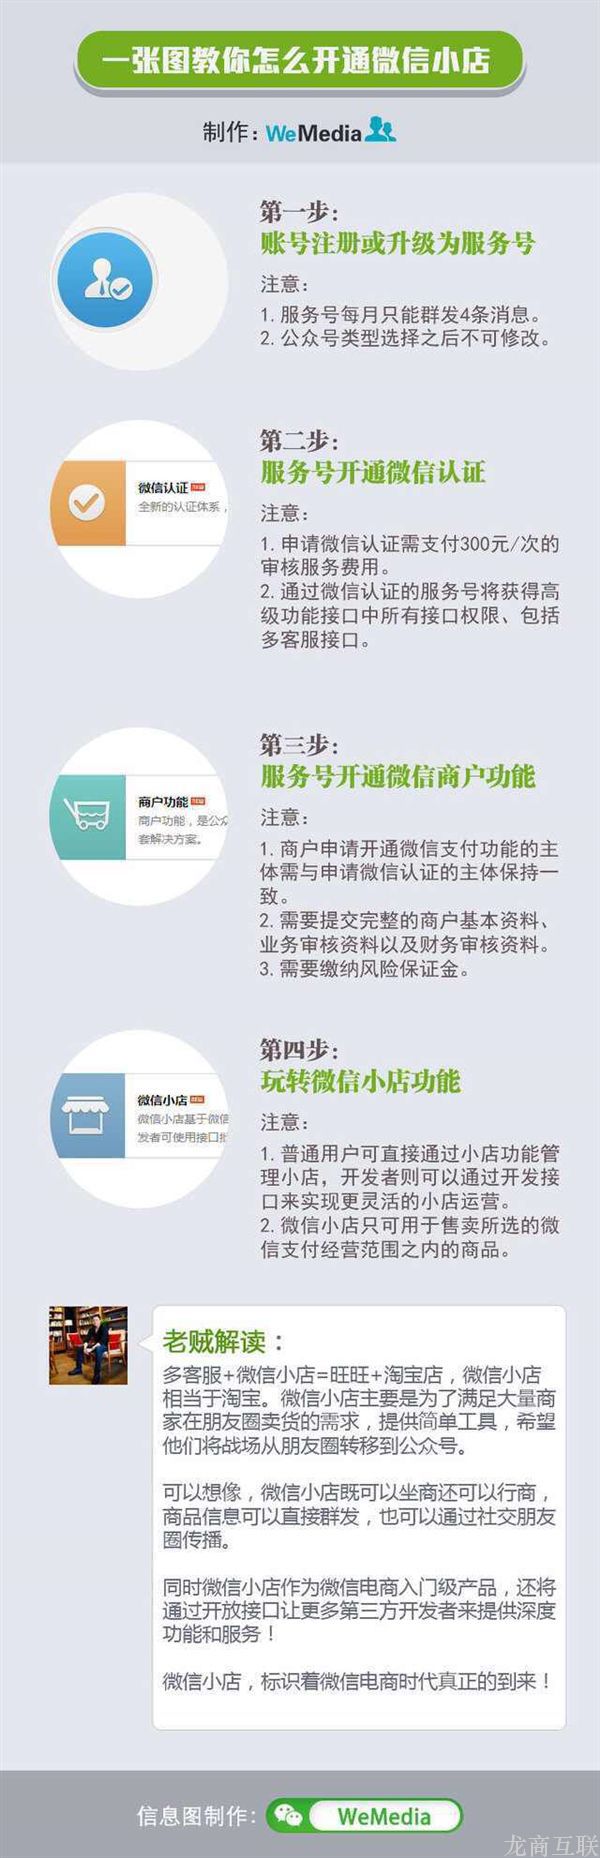 龙商互联济南微信公众平台商家怎么申请开通微信小店